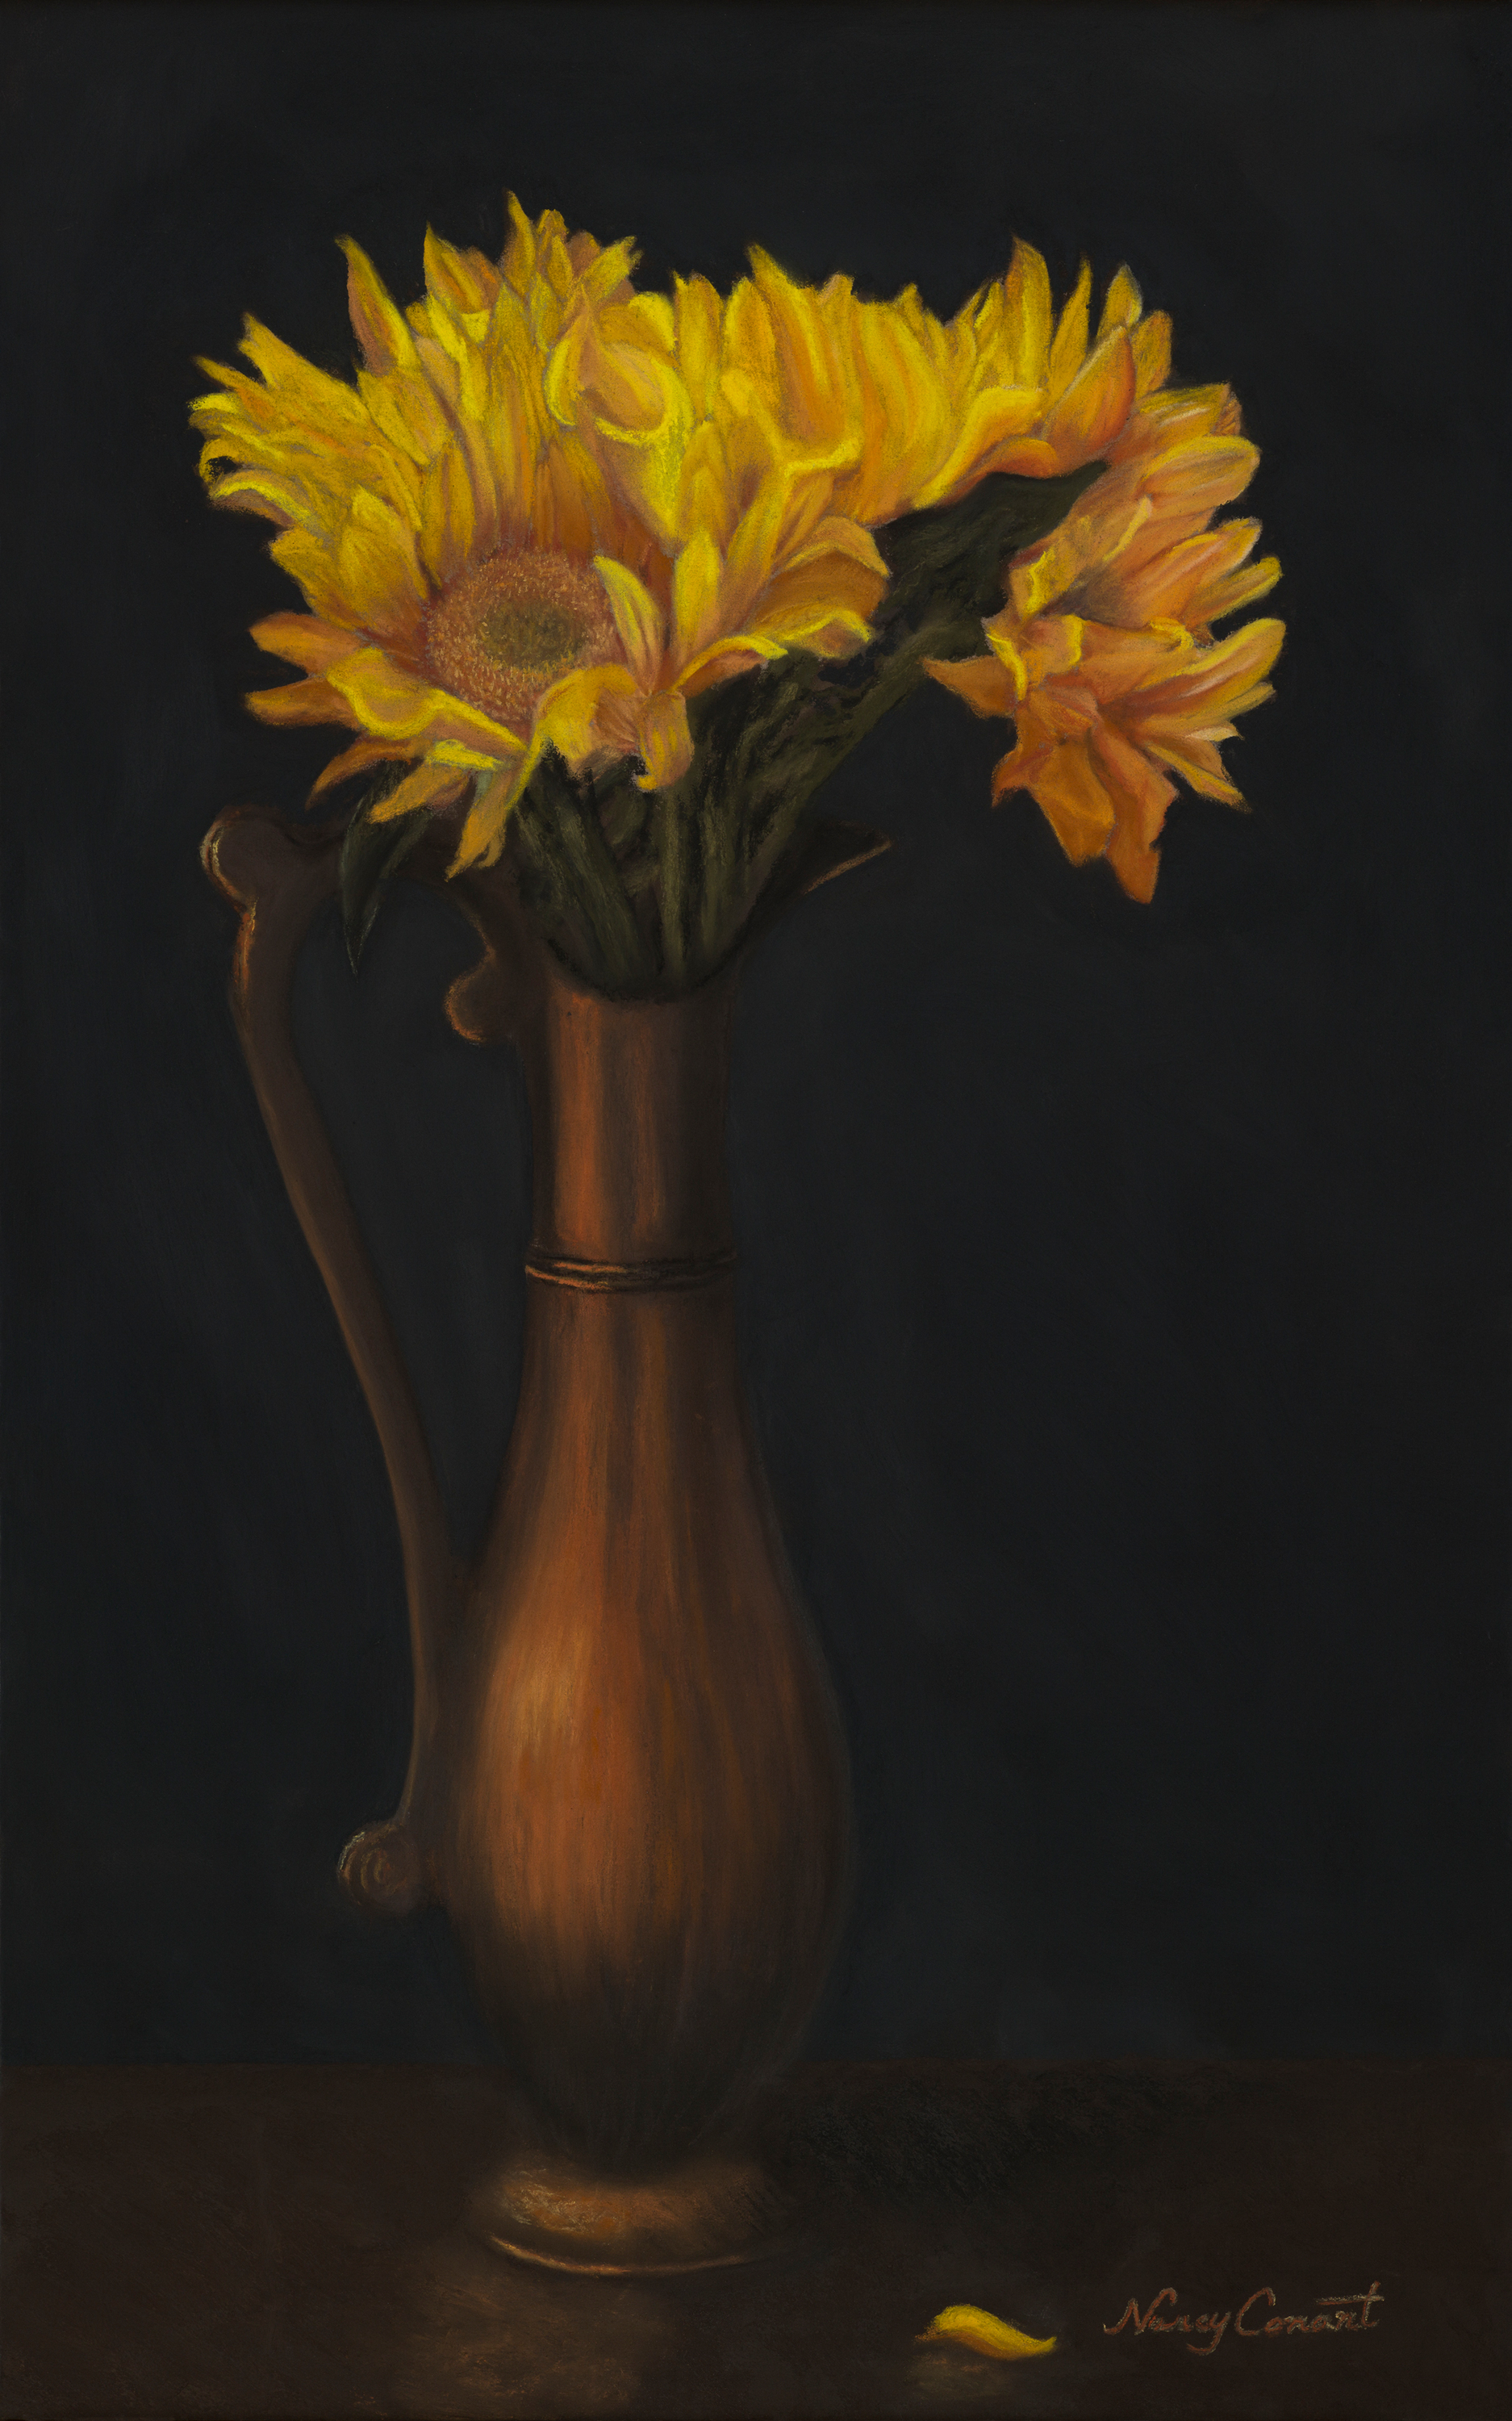 Nancy conant   sunflowers orig auto w9bacb